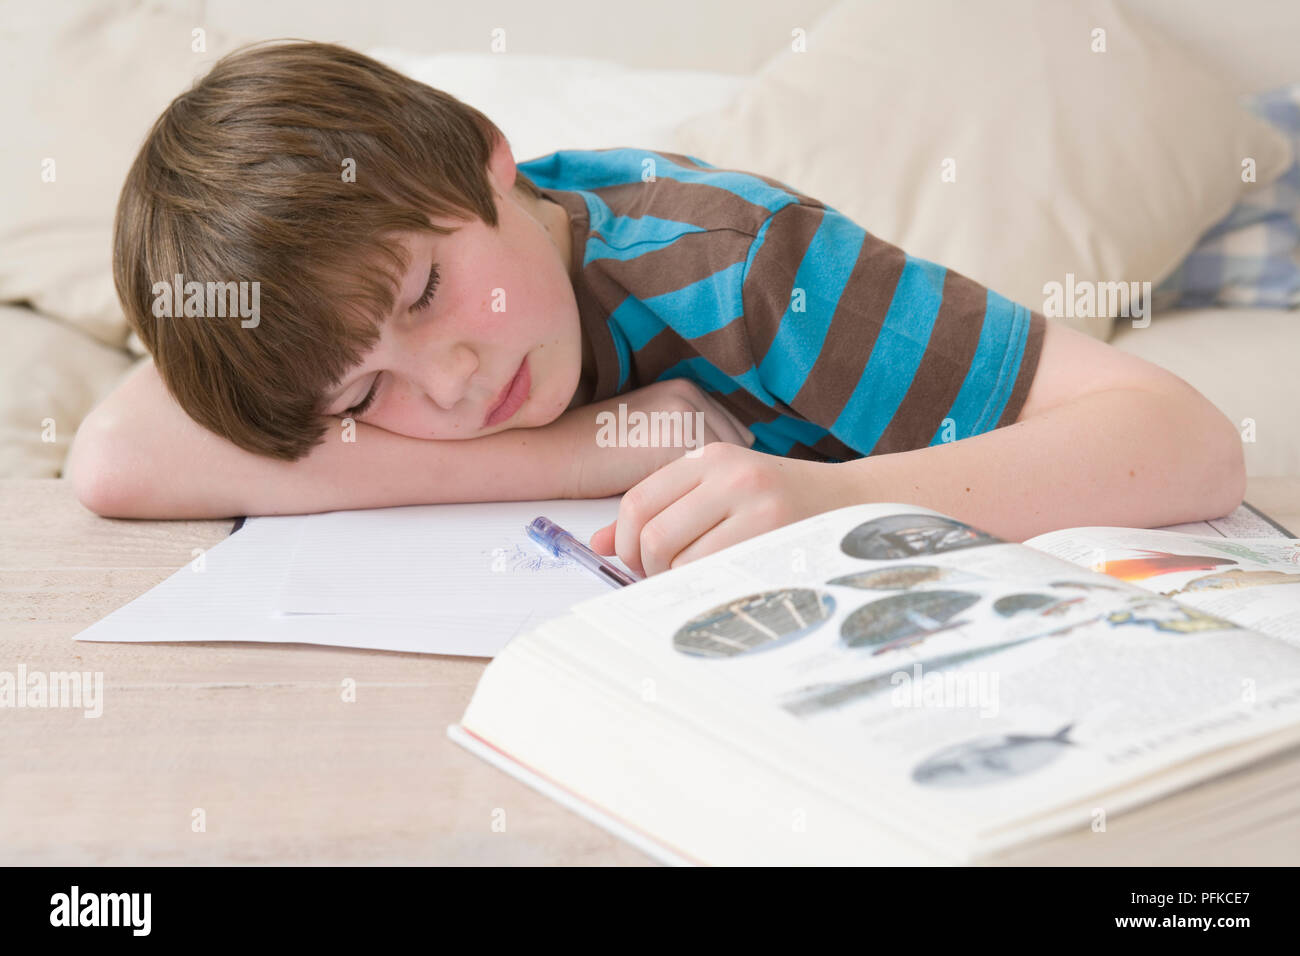 Ragazzo addormentato oltre i suoi compiti, giacente sul letto con un libro di testo aperto, testa in appoggio sul braccio, close-up, vista frontale Foto Stock